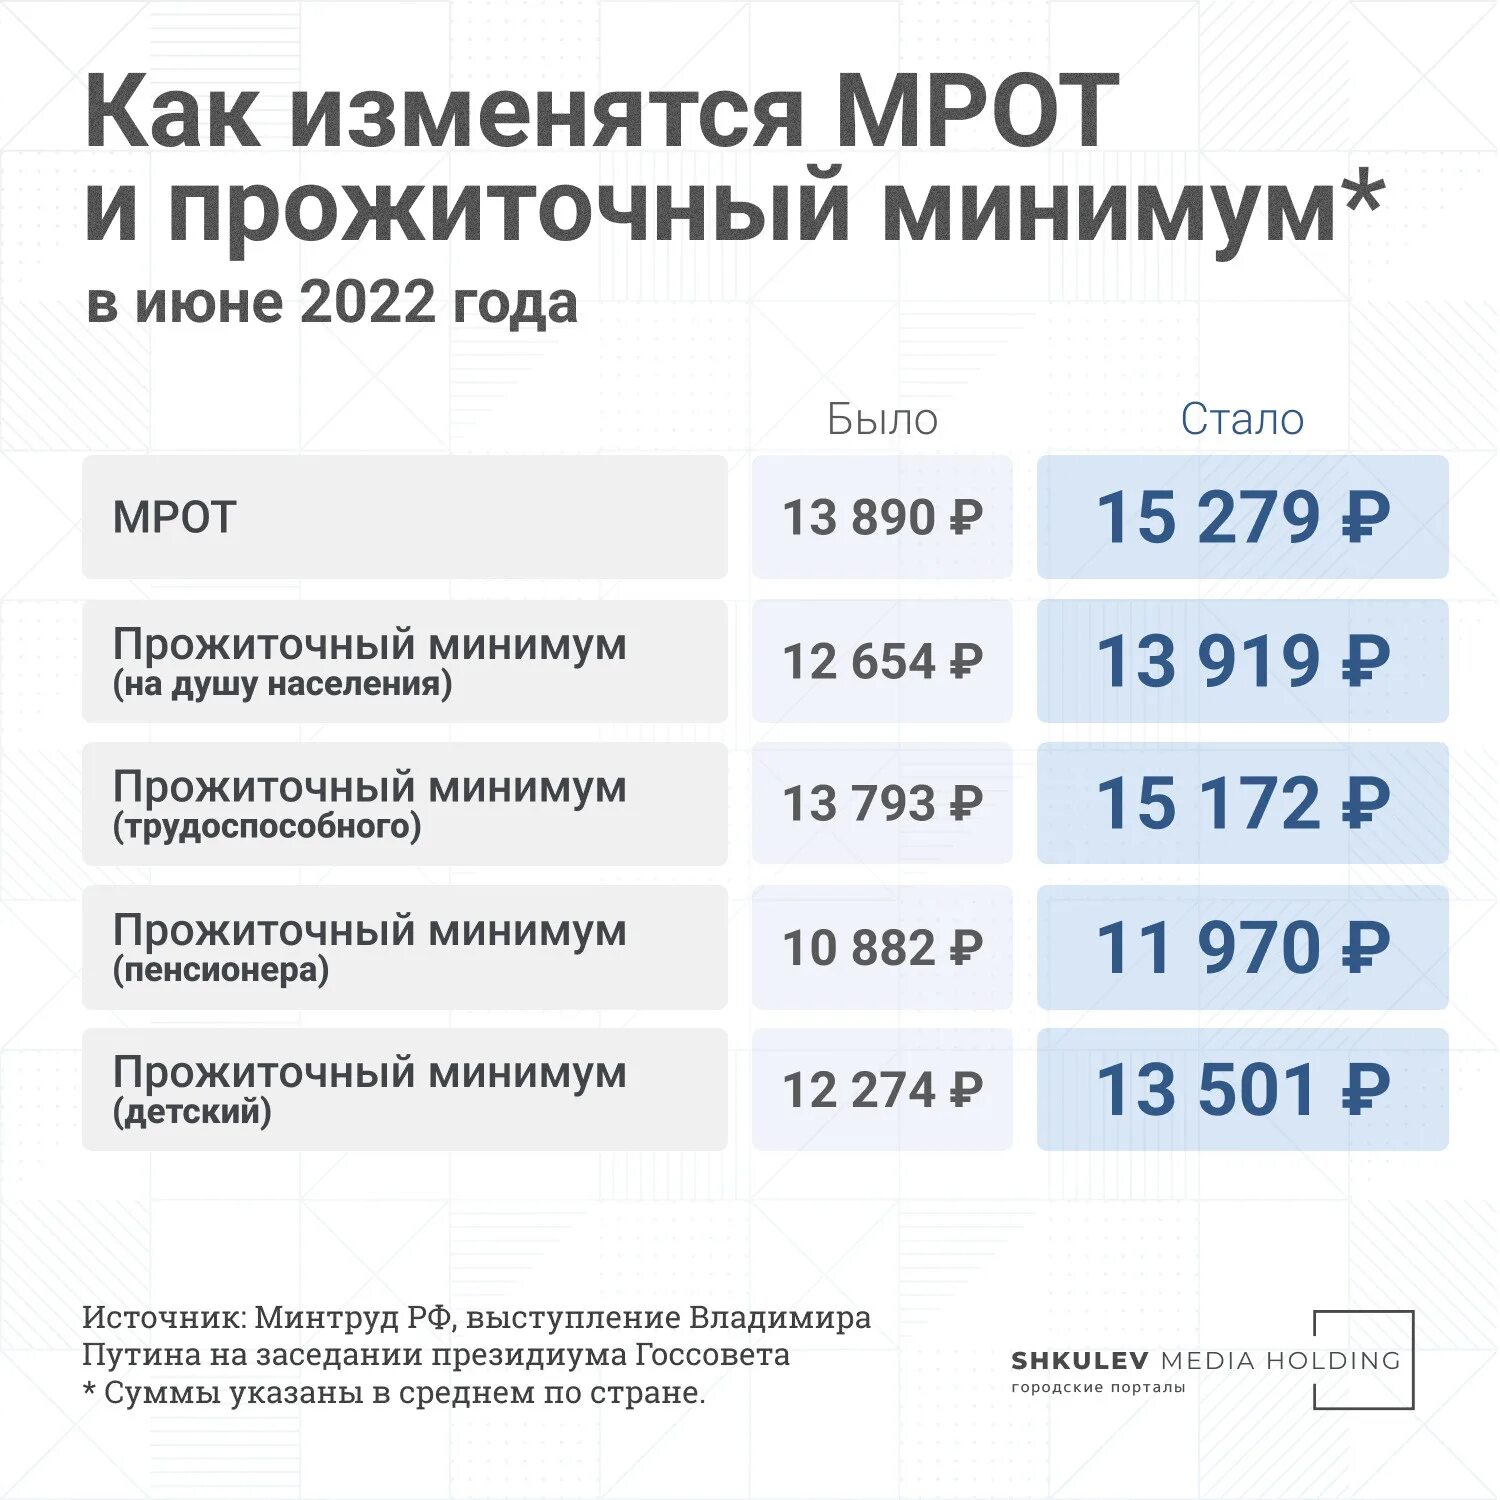 Прожиточный минимум в прошлом году в России 2023. МРОТ С июня 2022. МРОТ И прожиточный минимум 2022. Прожиточный минимум для трудоспособного населения в 2022.